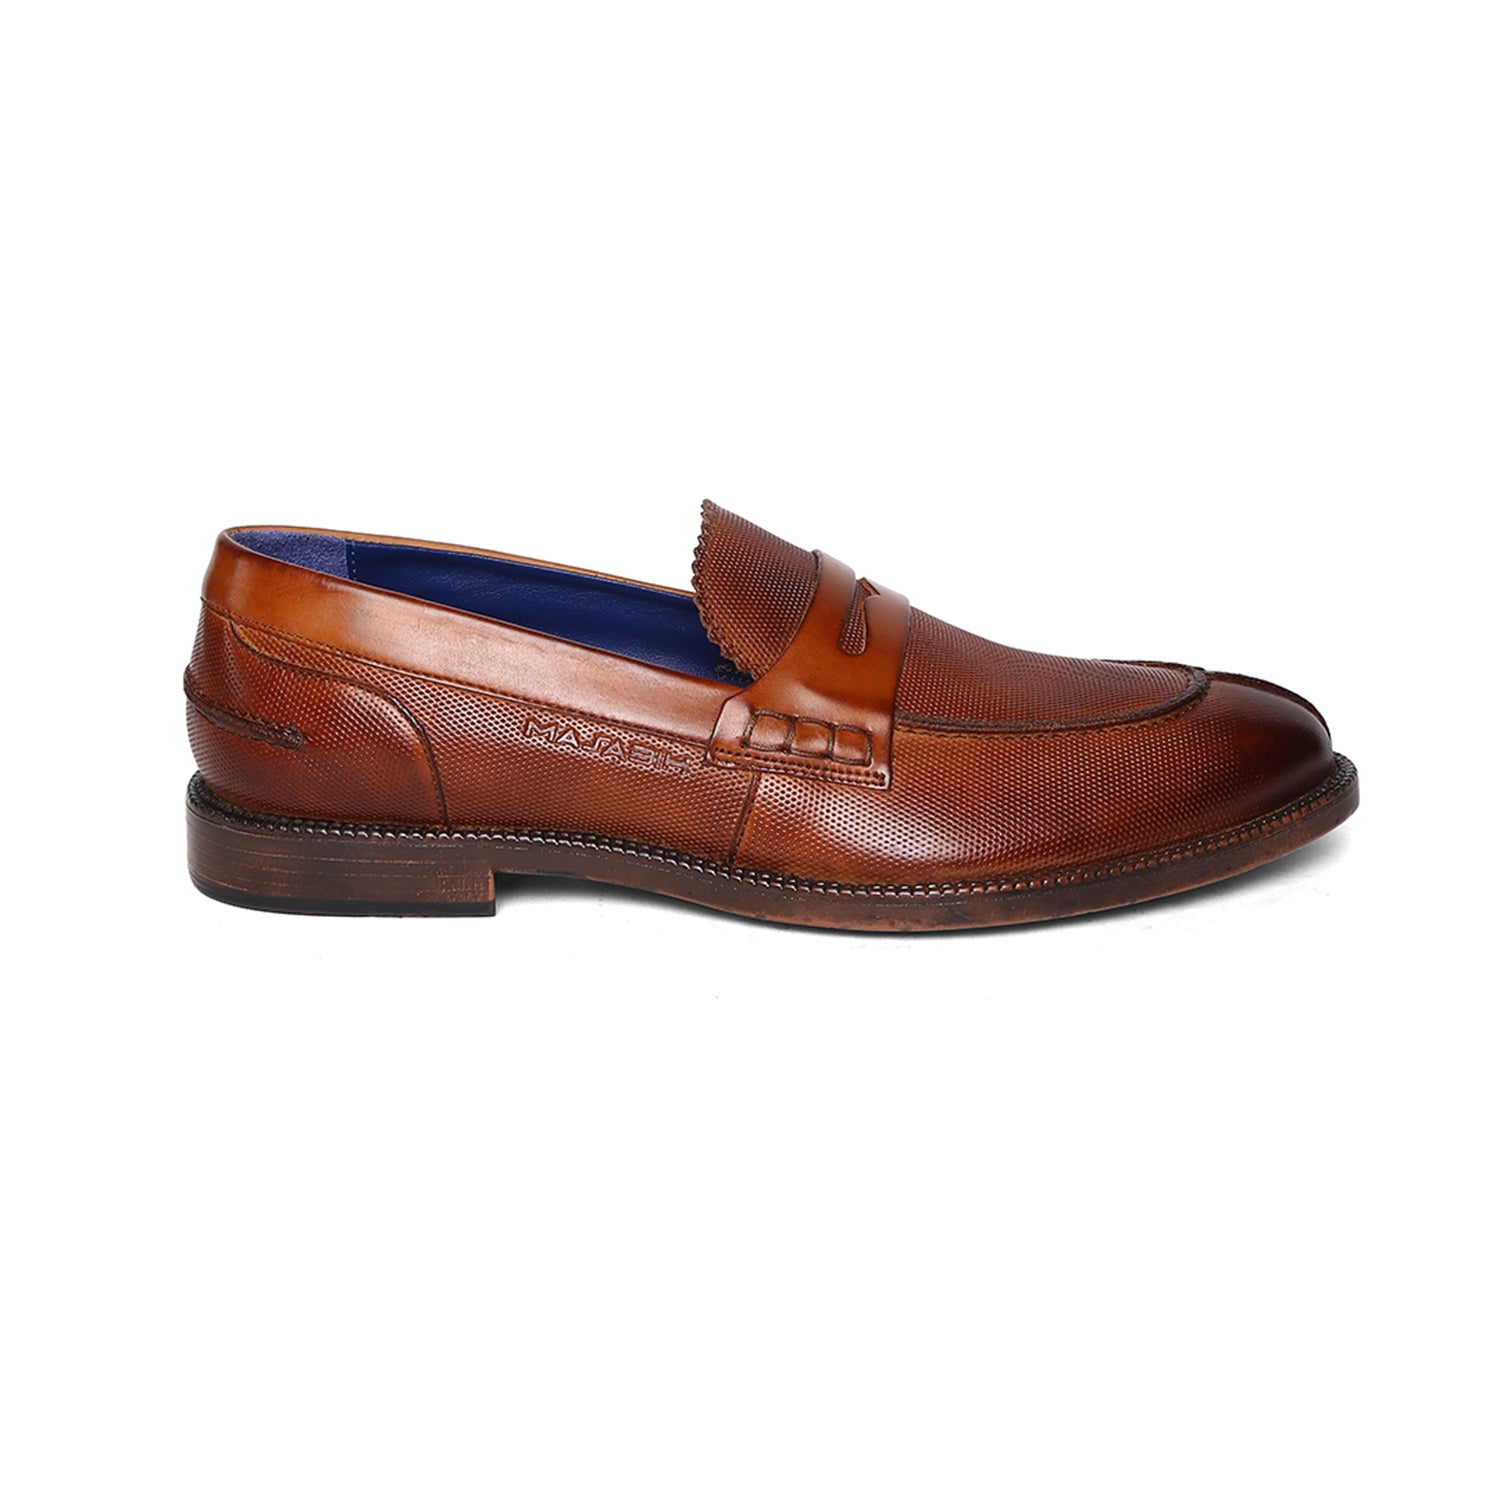 Masabih Genuine Leather Tan Loafer Slipon Shoes for Men